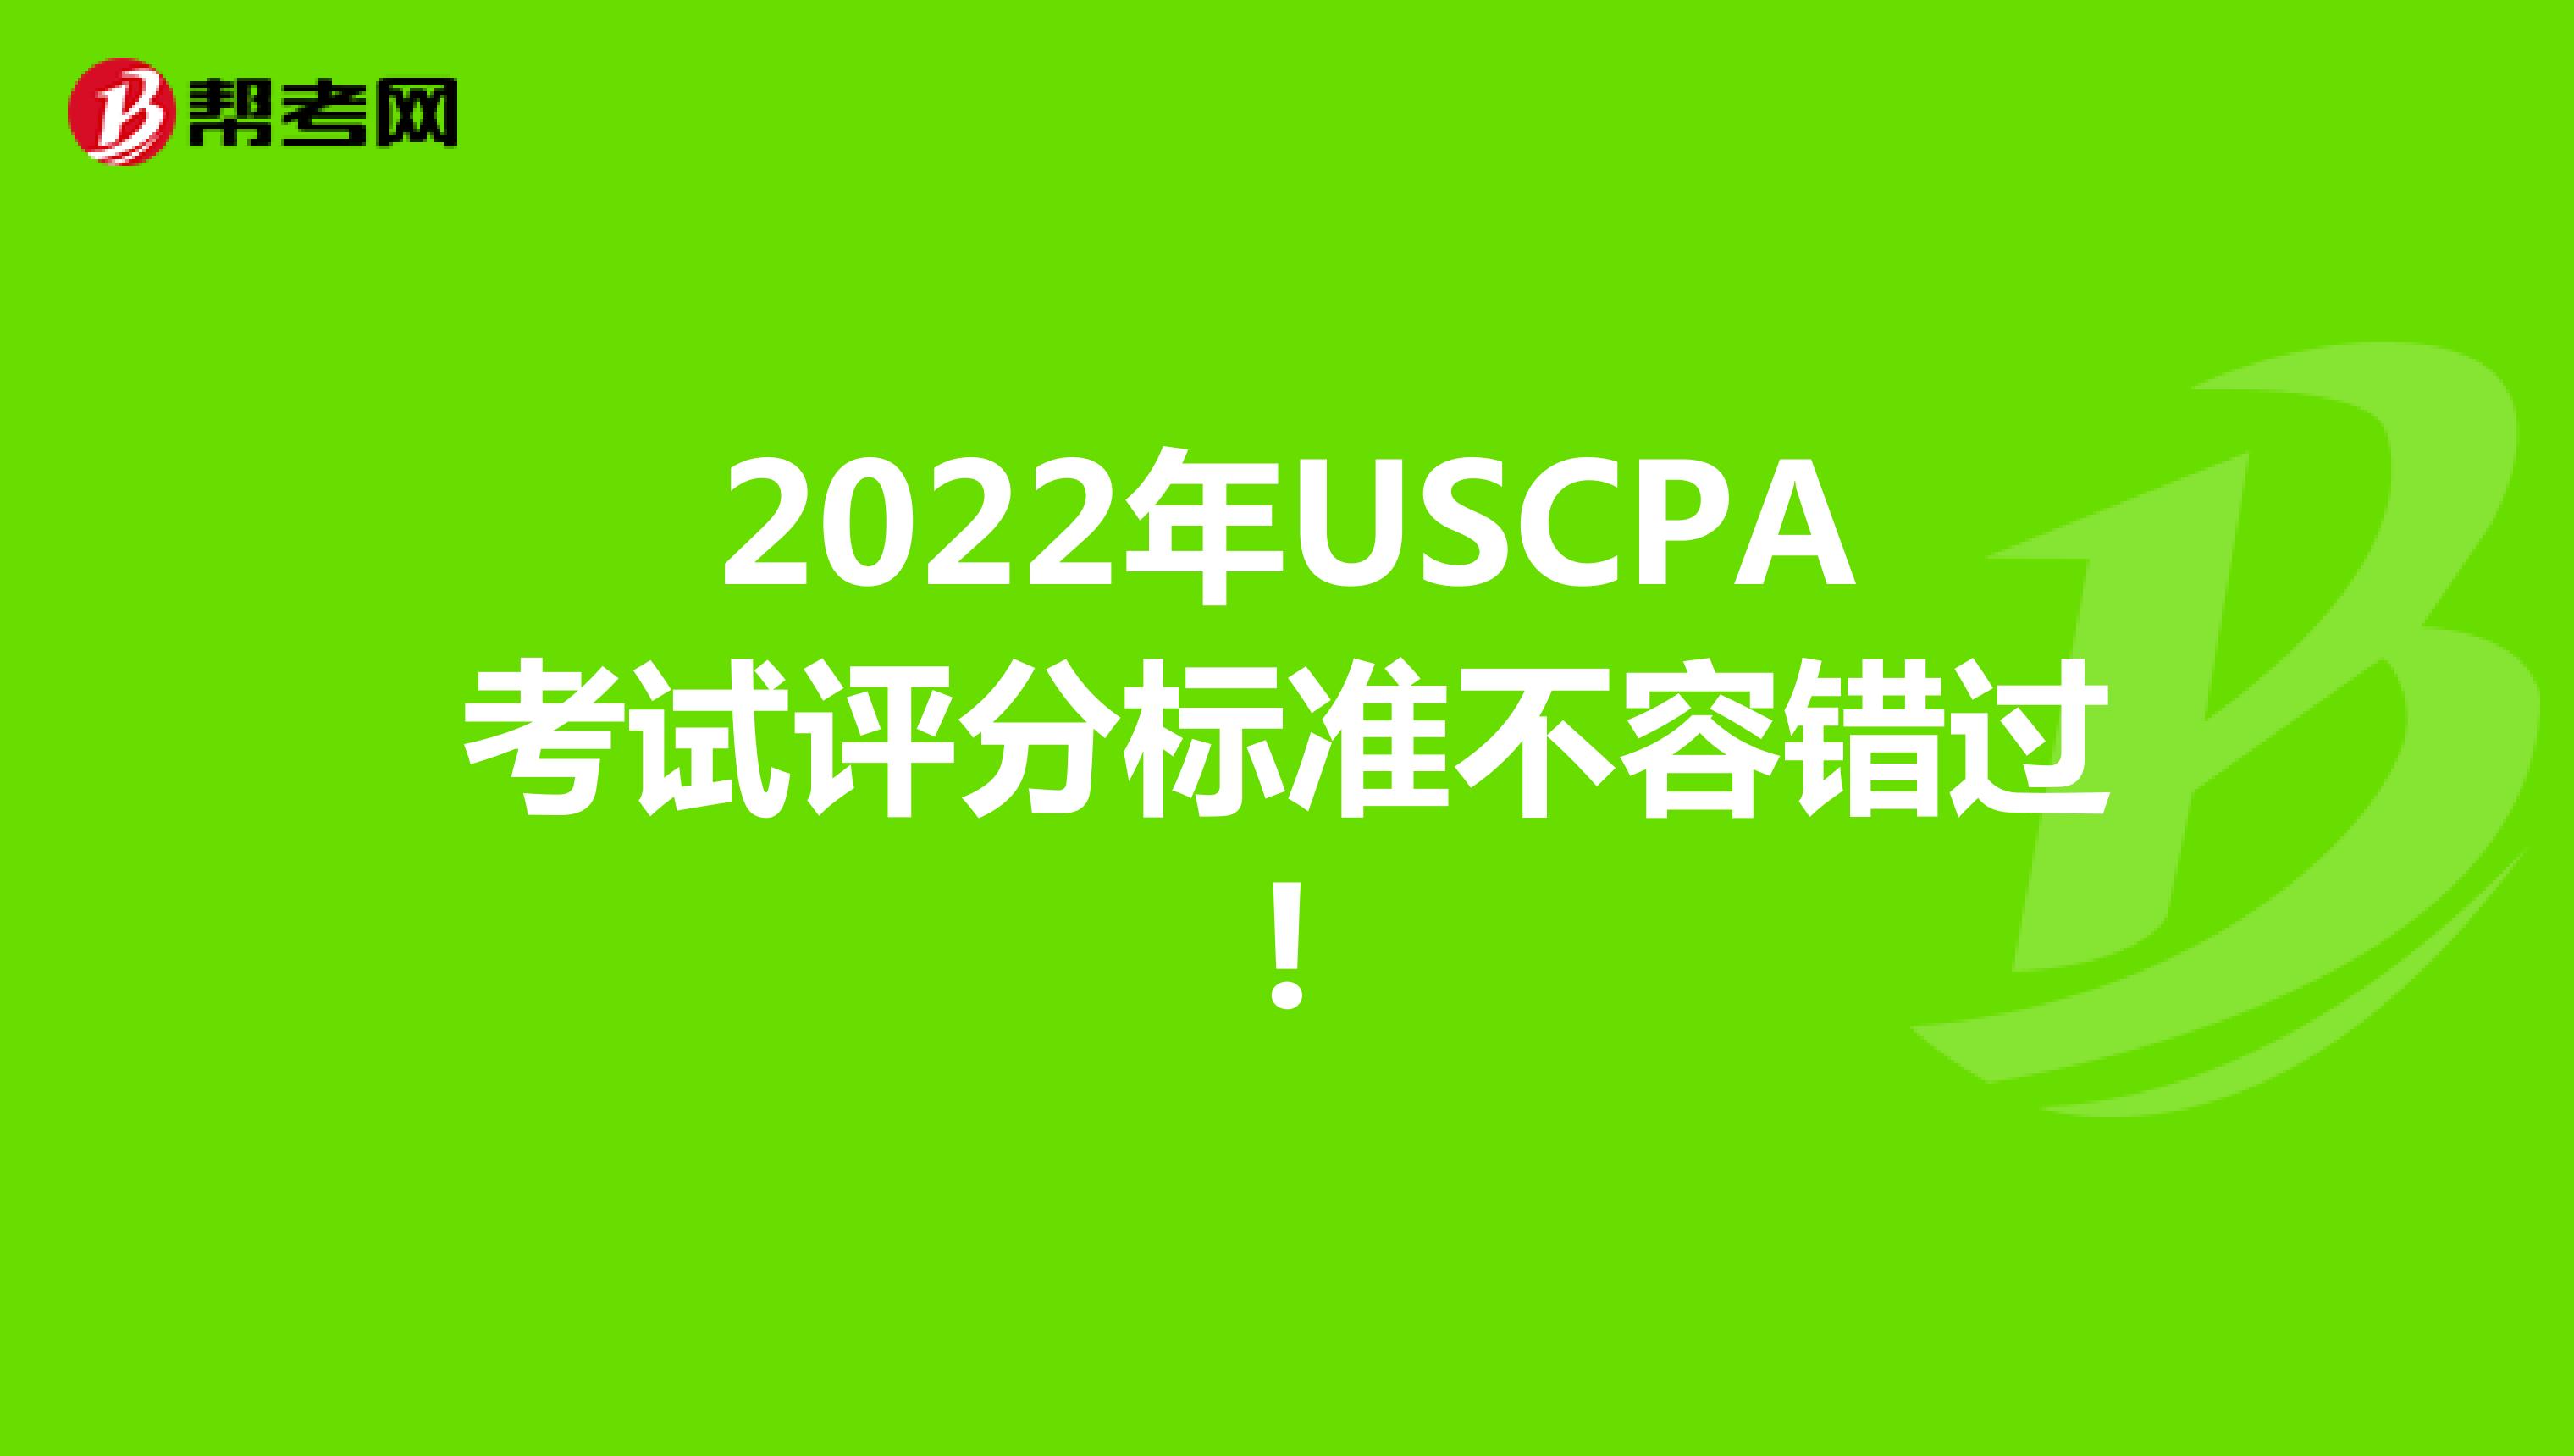 2022年USCPA考试评分标准不容错过!